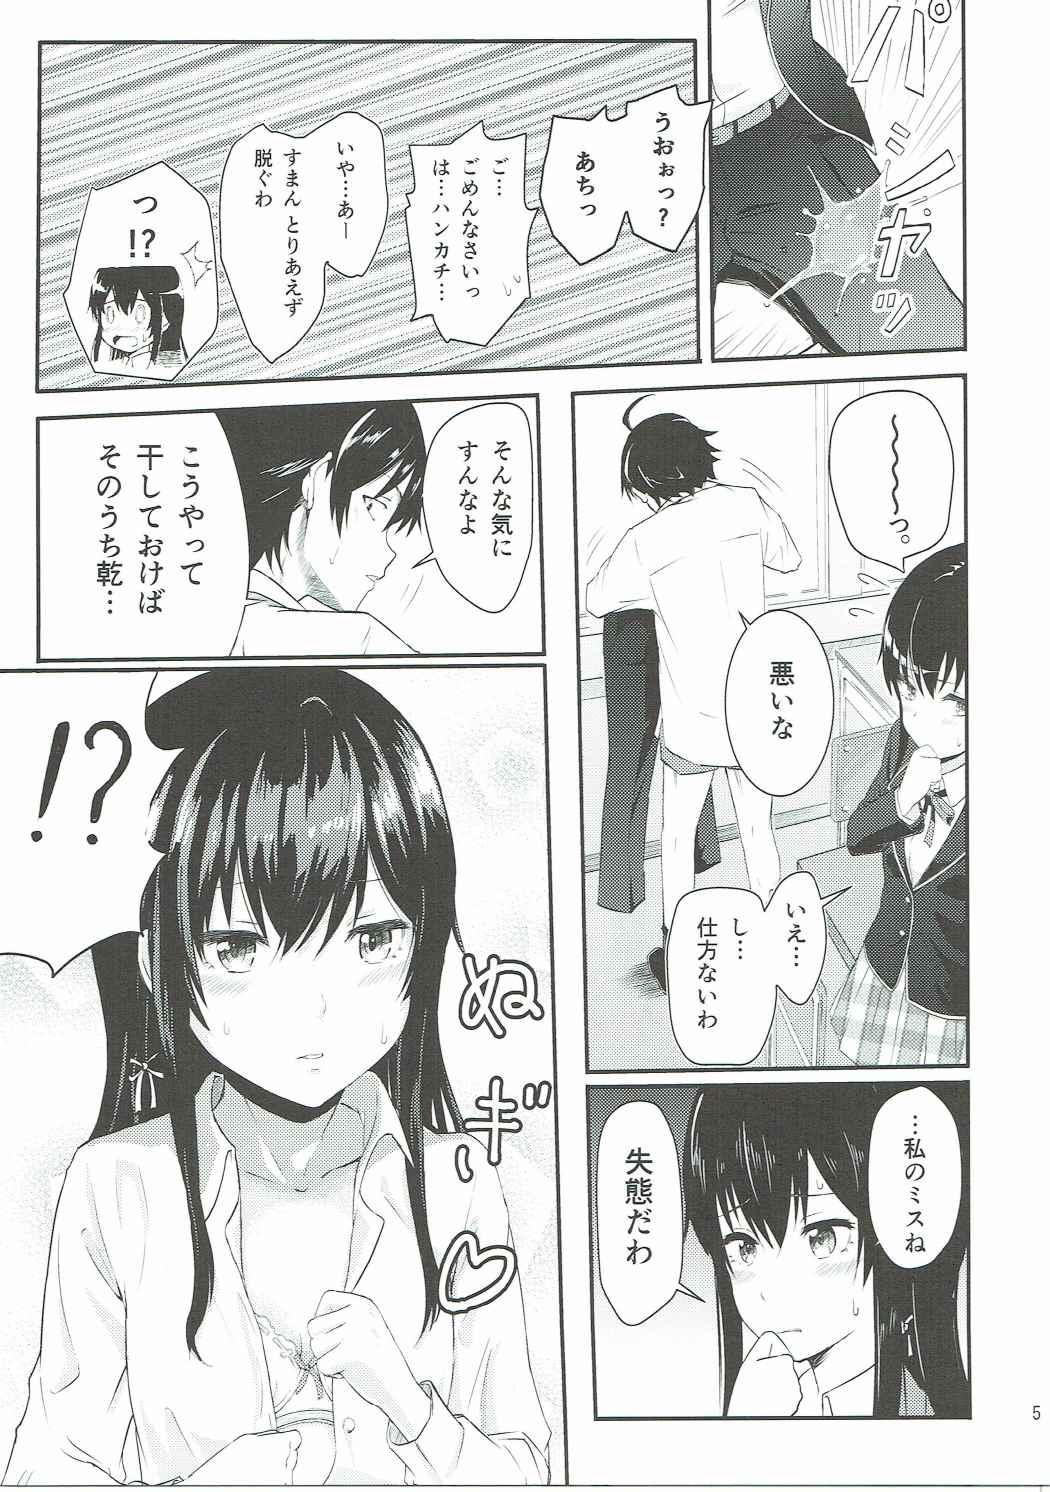 Soft Yukino - Yahari ore no seishun love come wa machigatteiru Buceta - Page 4